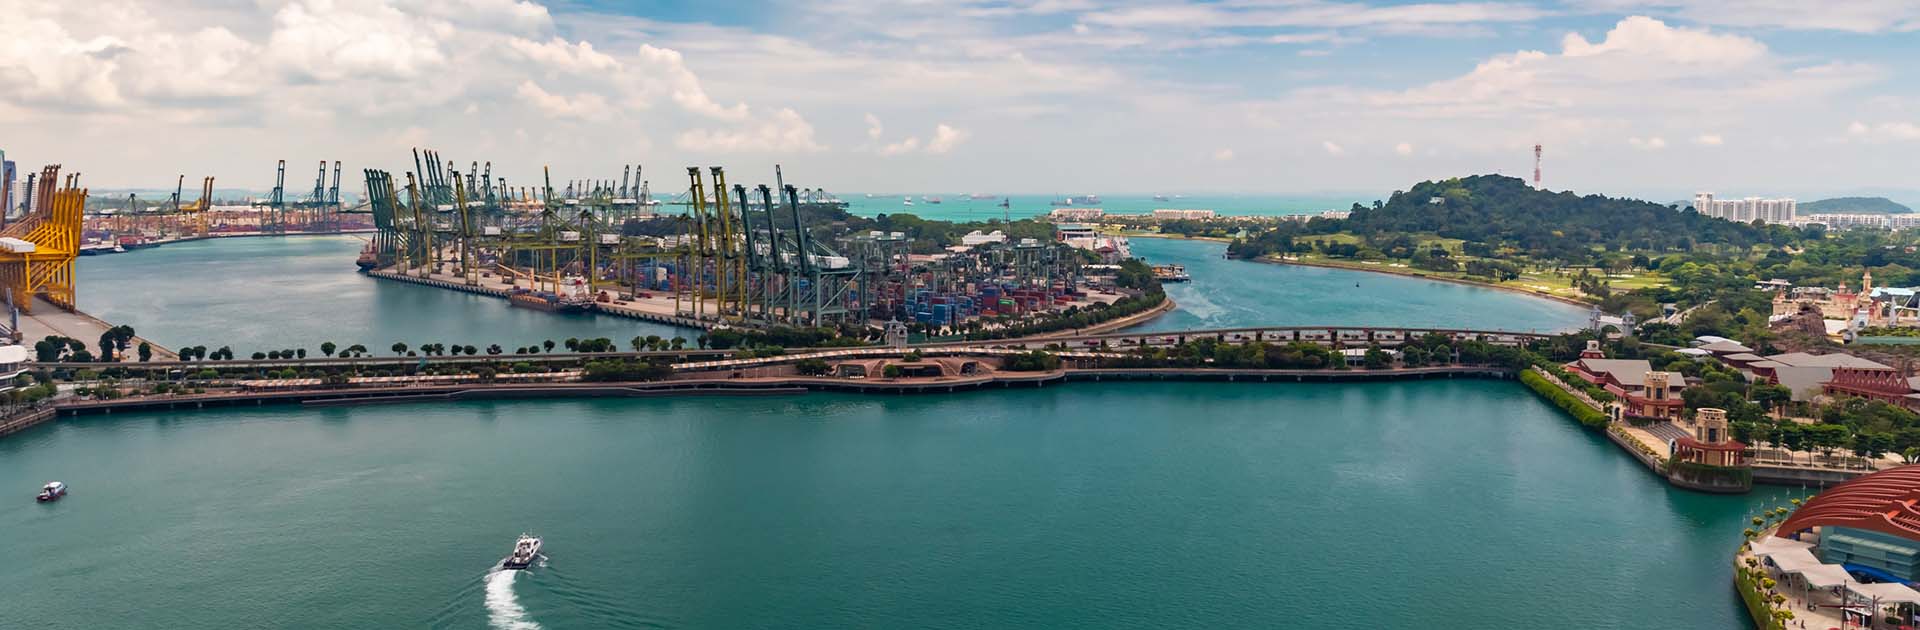 El enorme puerto logístico y comercial de Singapur, con un montón de grúas para mover contenedores, enormes barcos de carga en el fondo, centros comerciales y rascacielos en la isla de entretenimiento cercana. Economía mundial